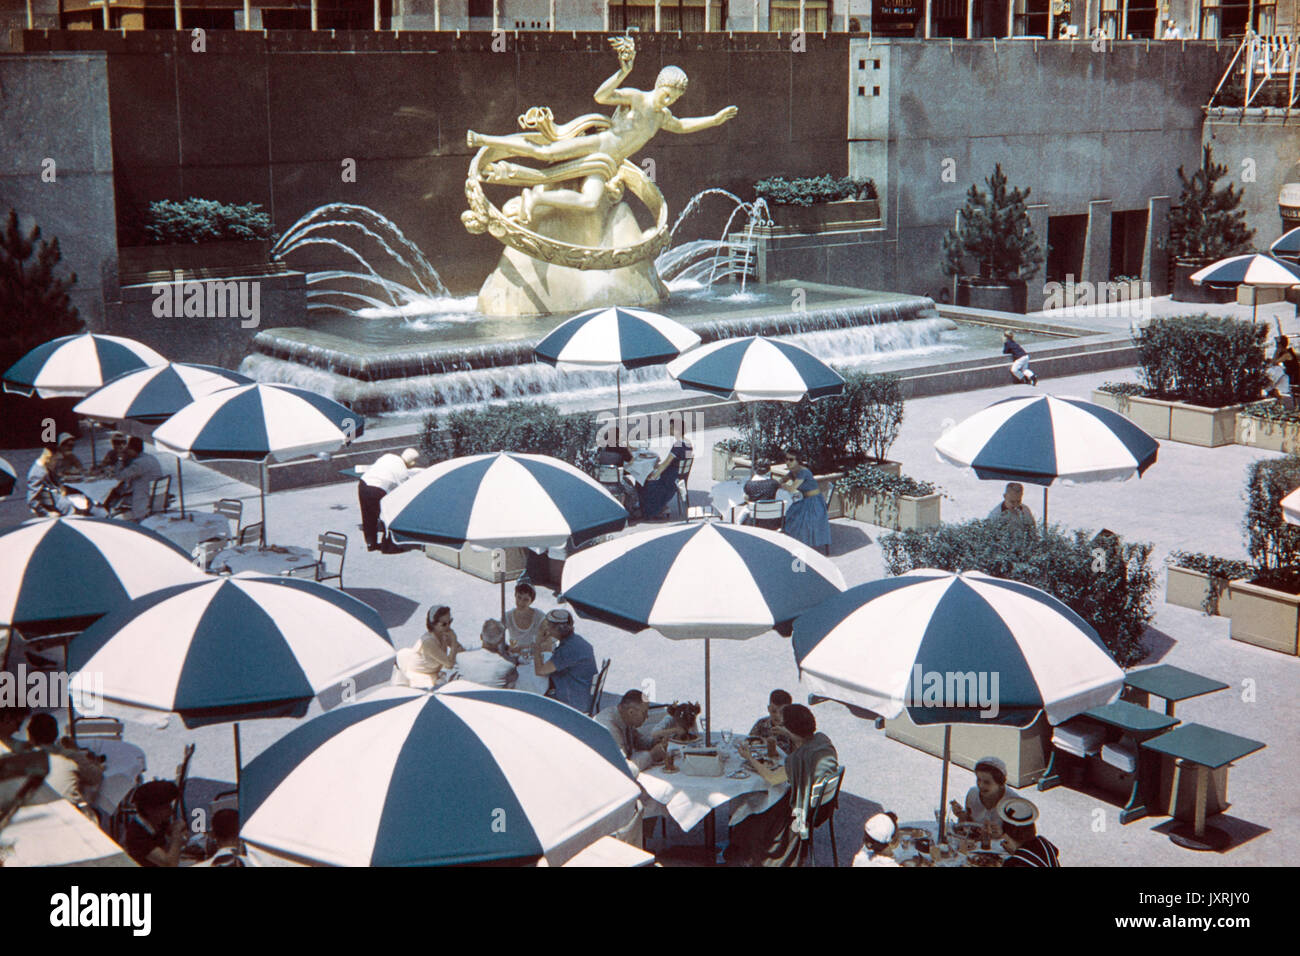 Die Menschen Essen und Trinken in den unteren Plaza des Rockefeller Center, New York, 1956. Bild zeigt die Mode der 50er Jahre. Statue des Prometheus im Hintergrund. Stockfoto